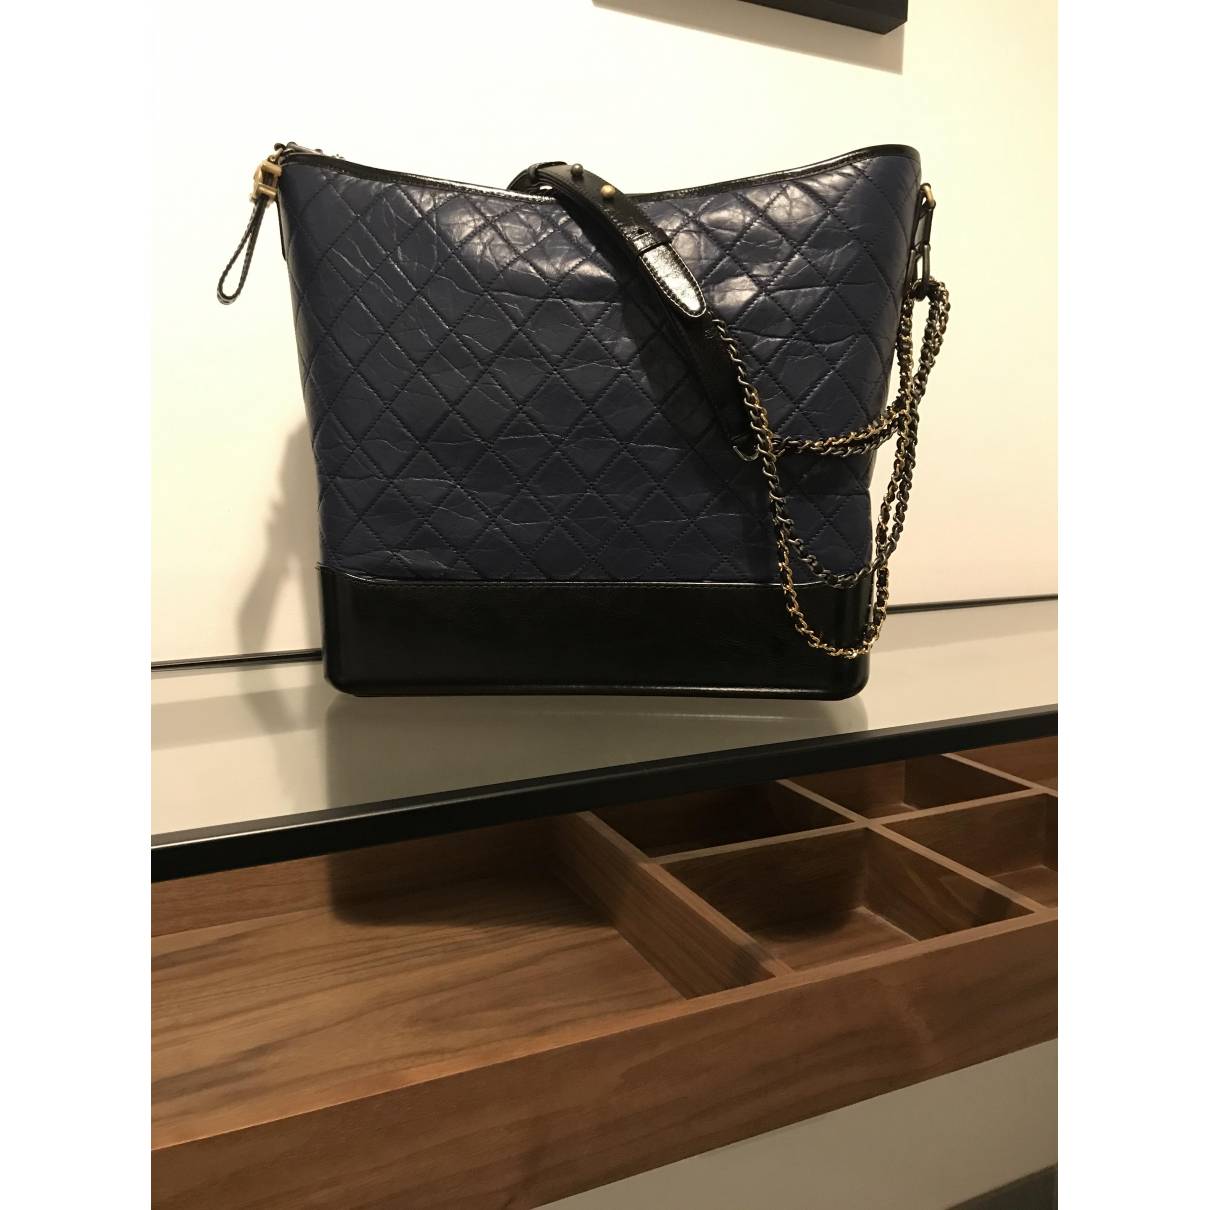 Chanel Gabrielle Leather Handbag